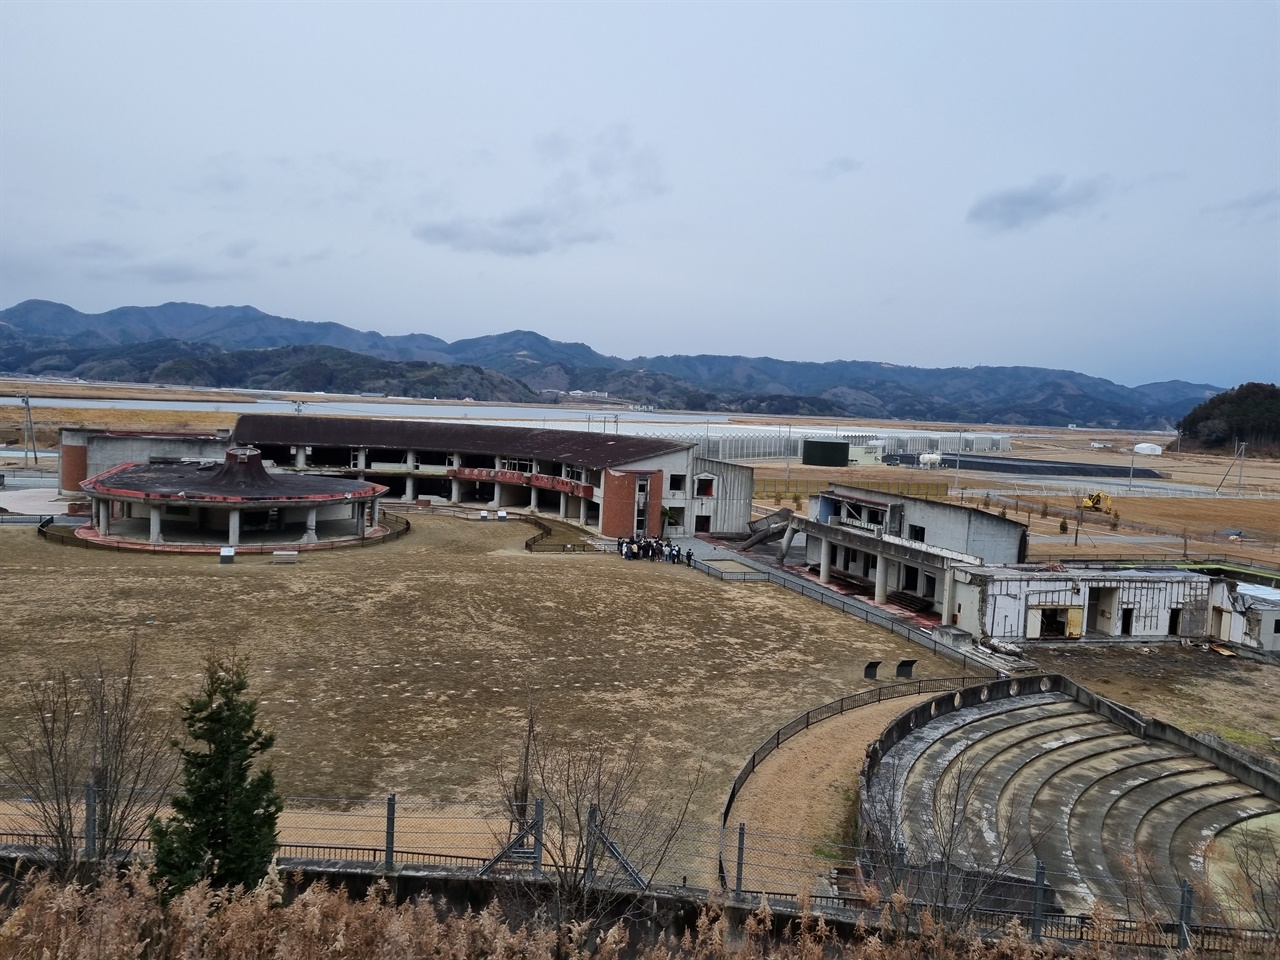 오카와소학교 뒷산에 올라 바라본 오카와소학교의 전경이다. 체육관과 교실을 잇는 연결복도가 무너진 것이 눈에 띈다. 3월 11일 그 날 아이들은 이 경치를 보지 못했다.